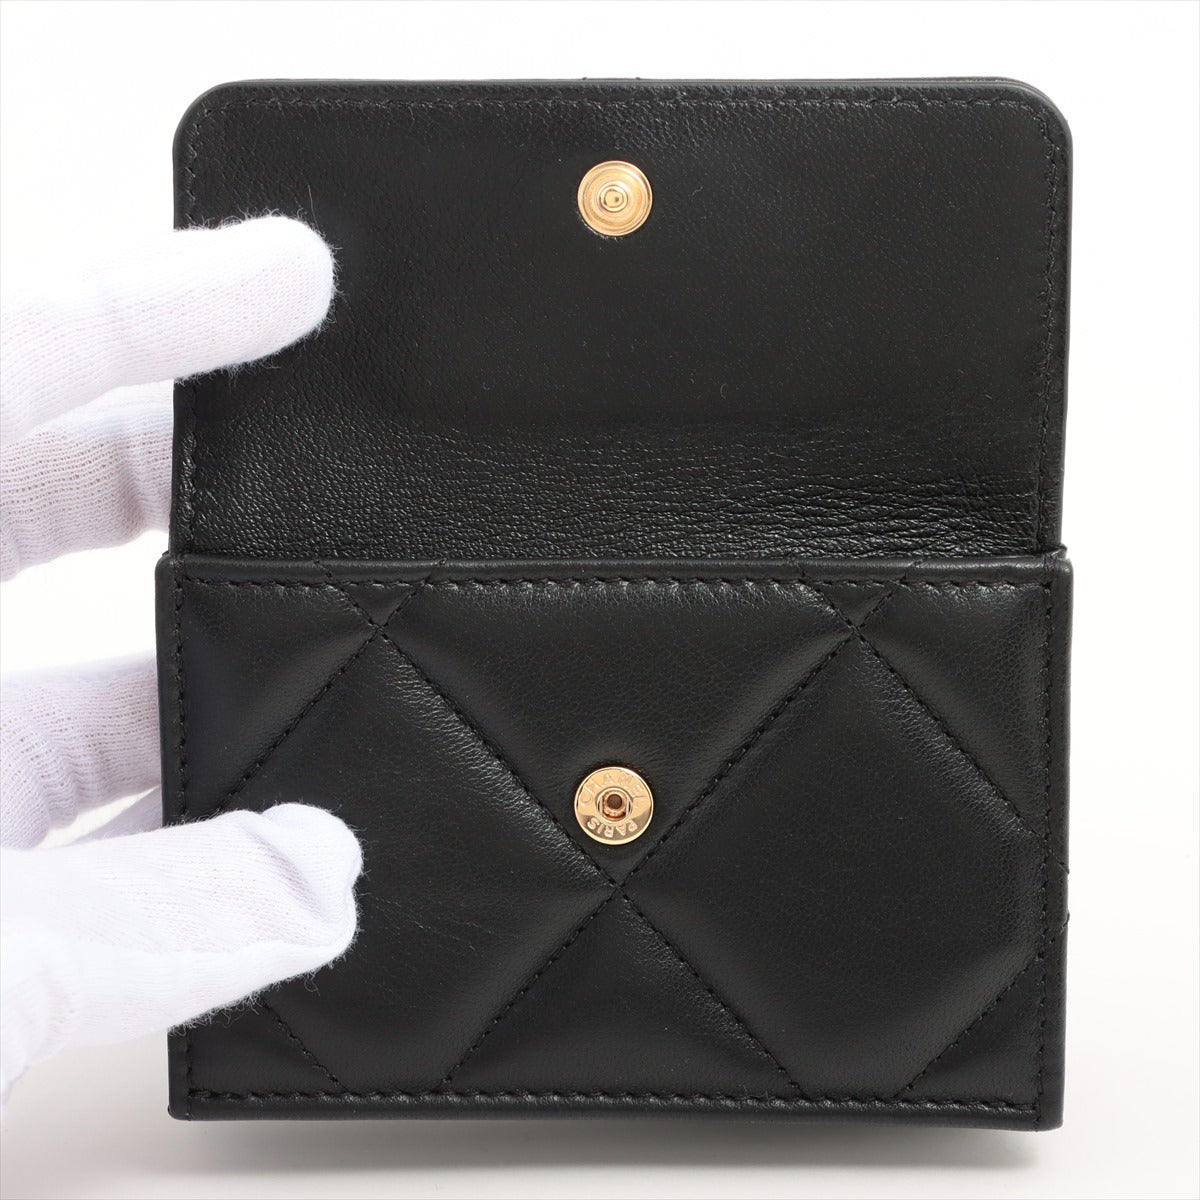 Chanel CHANEL 19 Lambskin Wallet Black Gold Metal fittings 31st